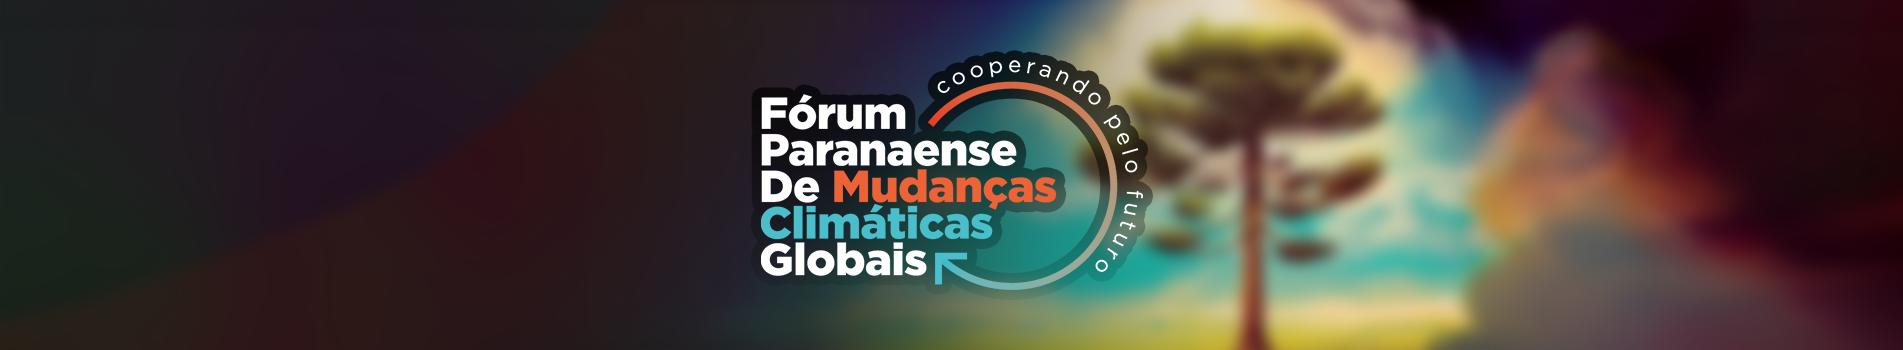 Participe do Fórum Paranaense de Mudanças Climáticas Globais